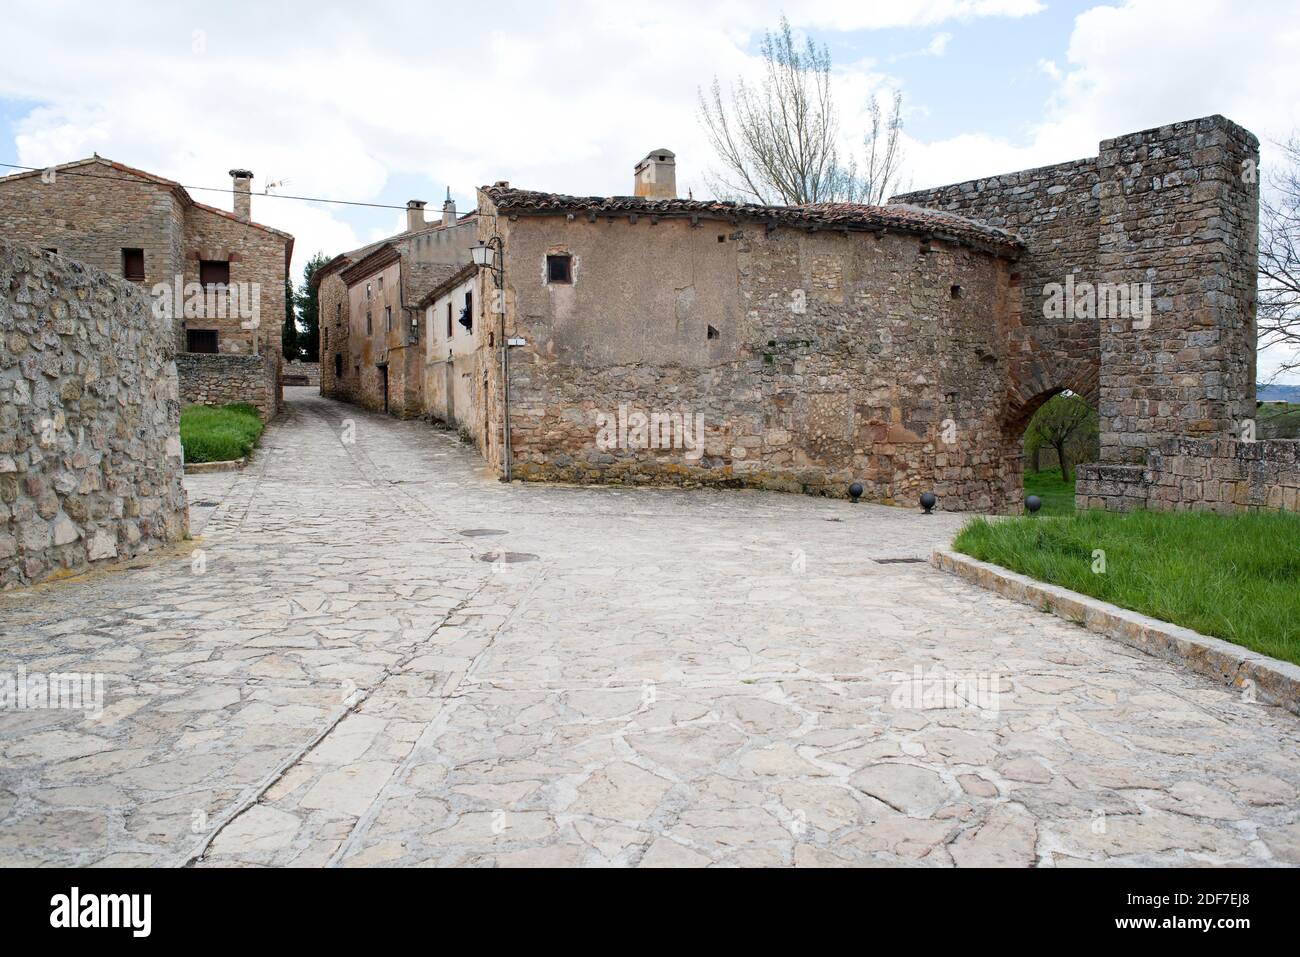 Medinaceli, casas y puerta árabe. Provincia de Soria, Castilla y León, España. Foto de stock